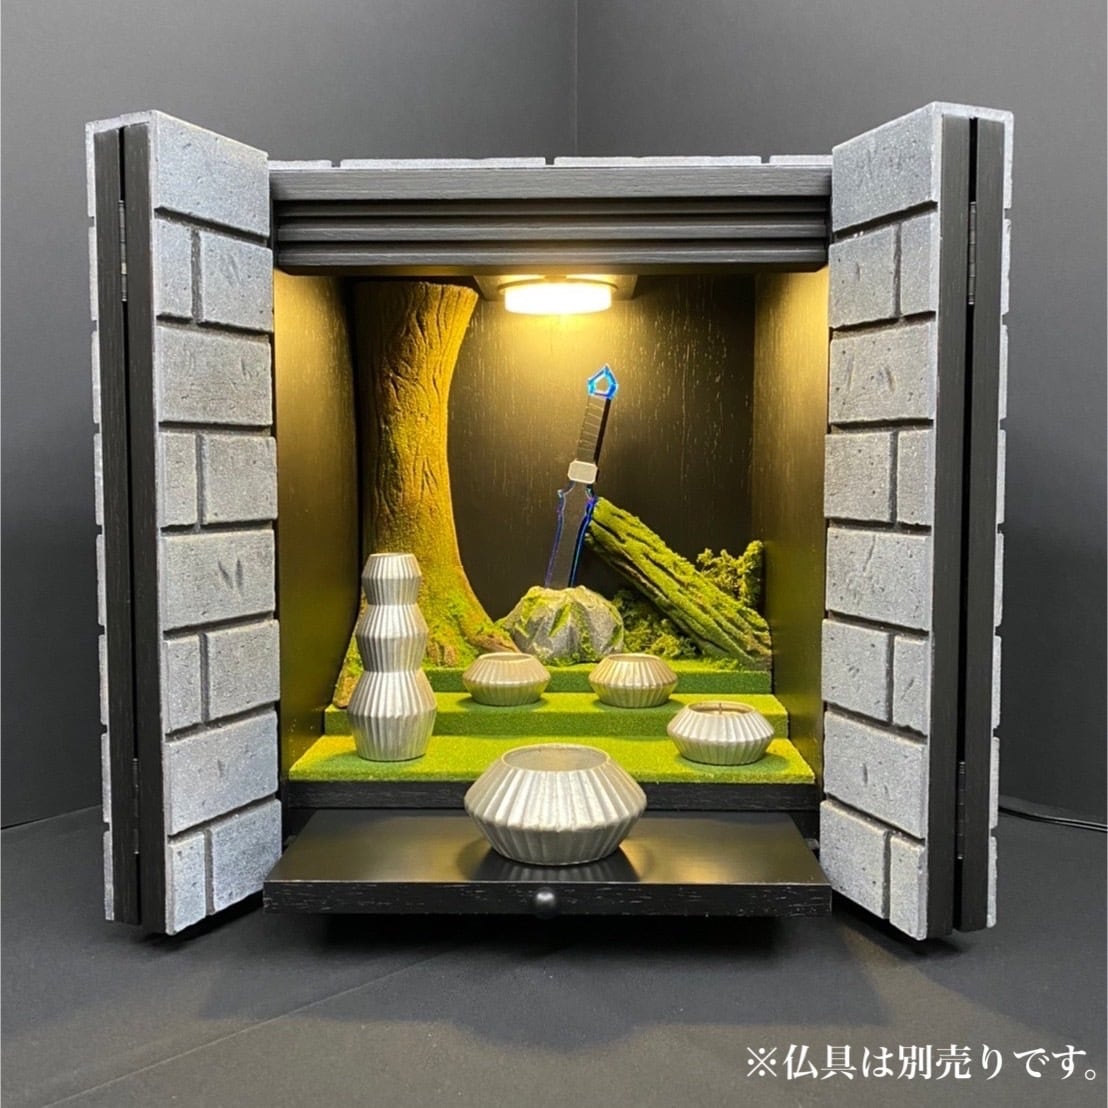 ファンタジー世界を題材にした「仏壇」が発売開始、価格は88万円。RPG風「飛沫防止アクリル板」を開発した「匠工芸」が開発